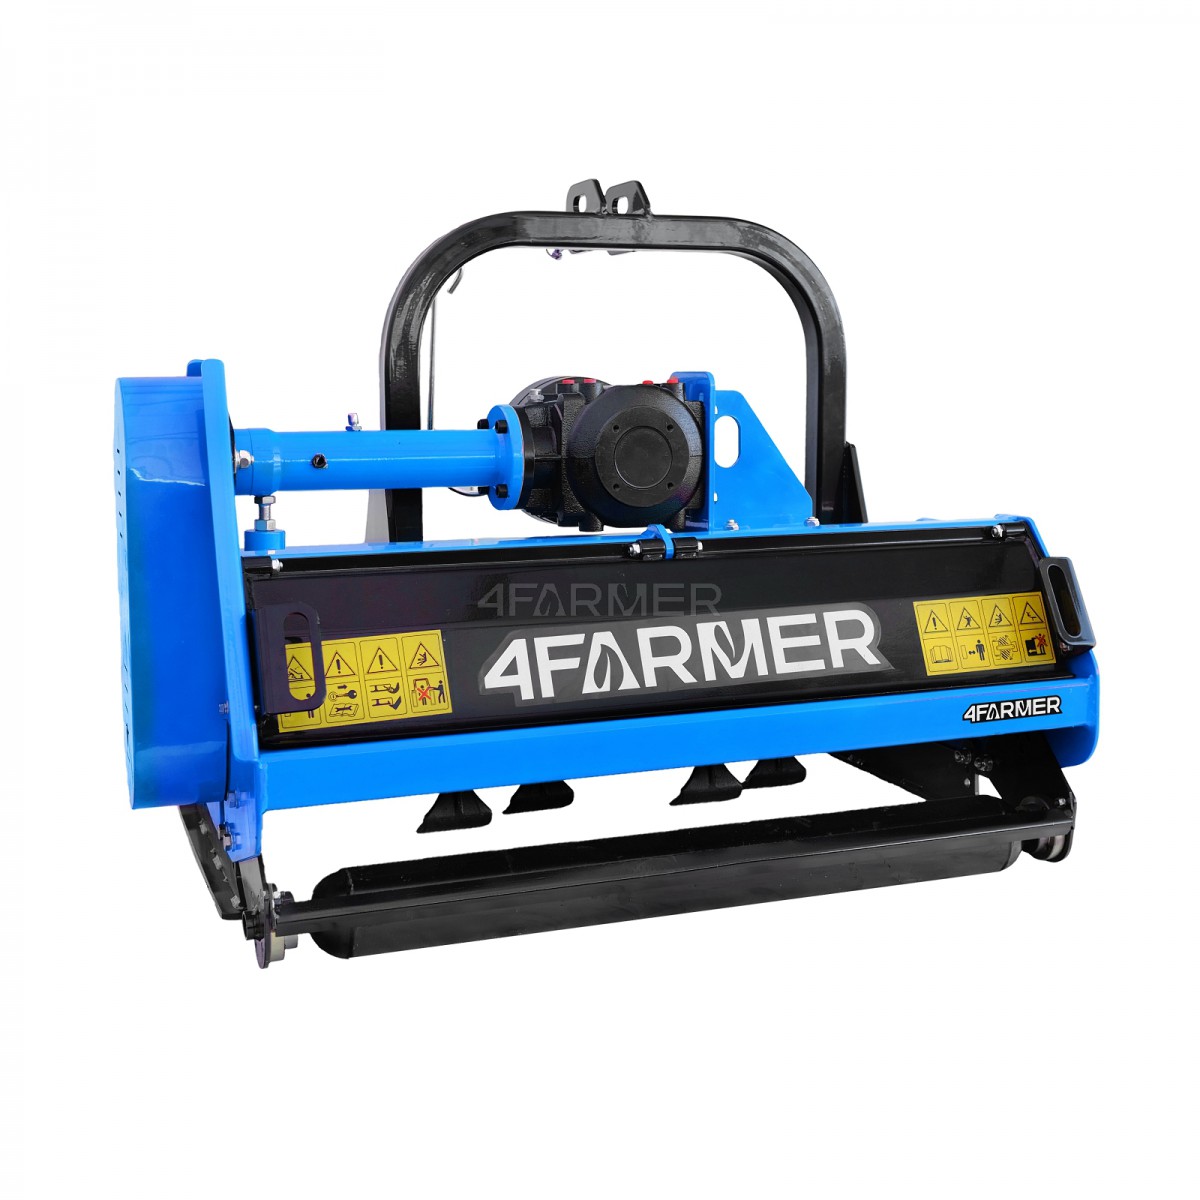 EFGC 105D 4FARMER flail mower - blue